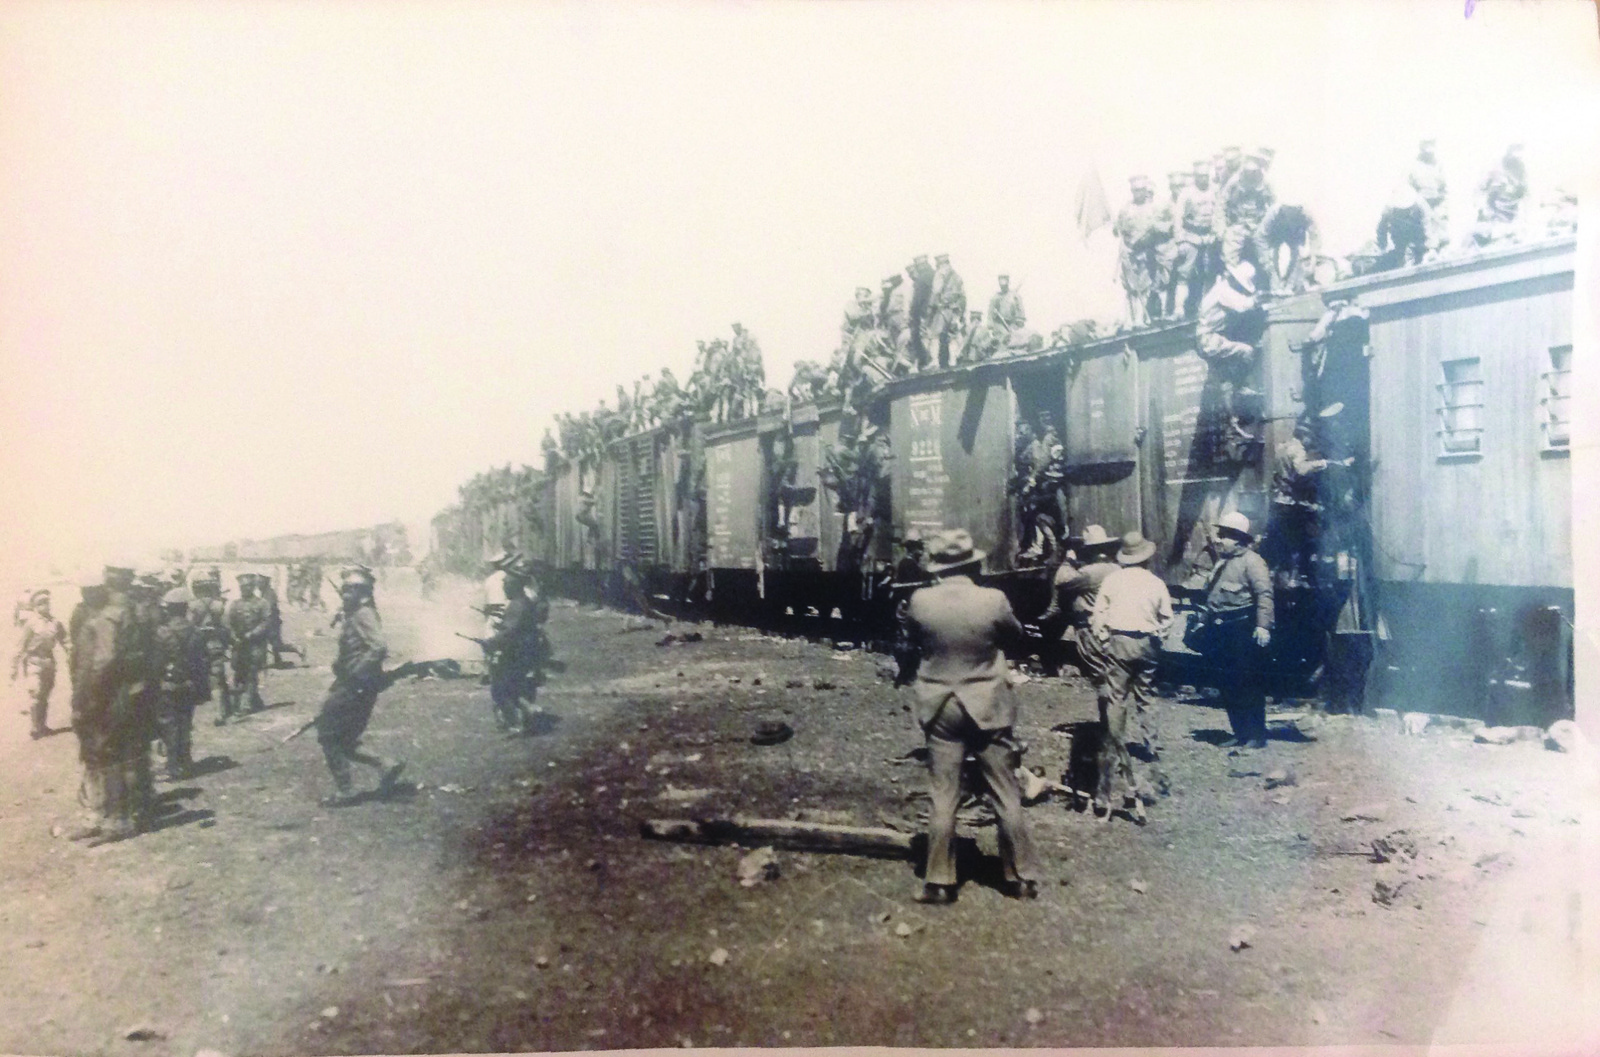 La Tropa en el ferrocarril. Marzo de 1929.

